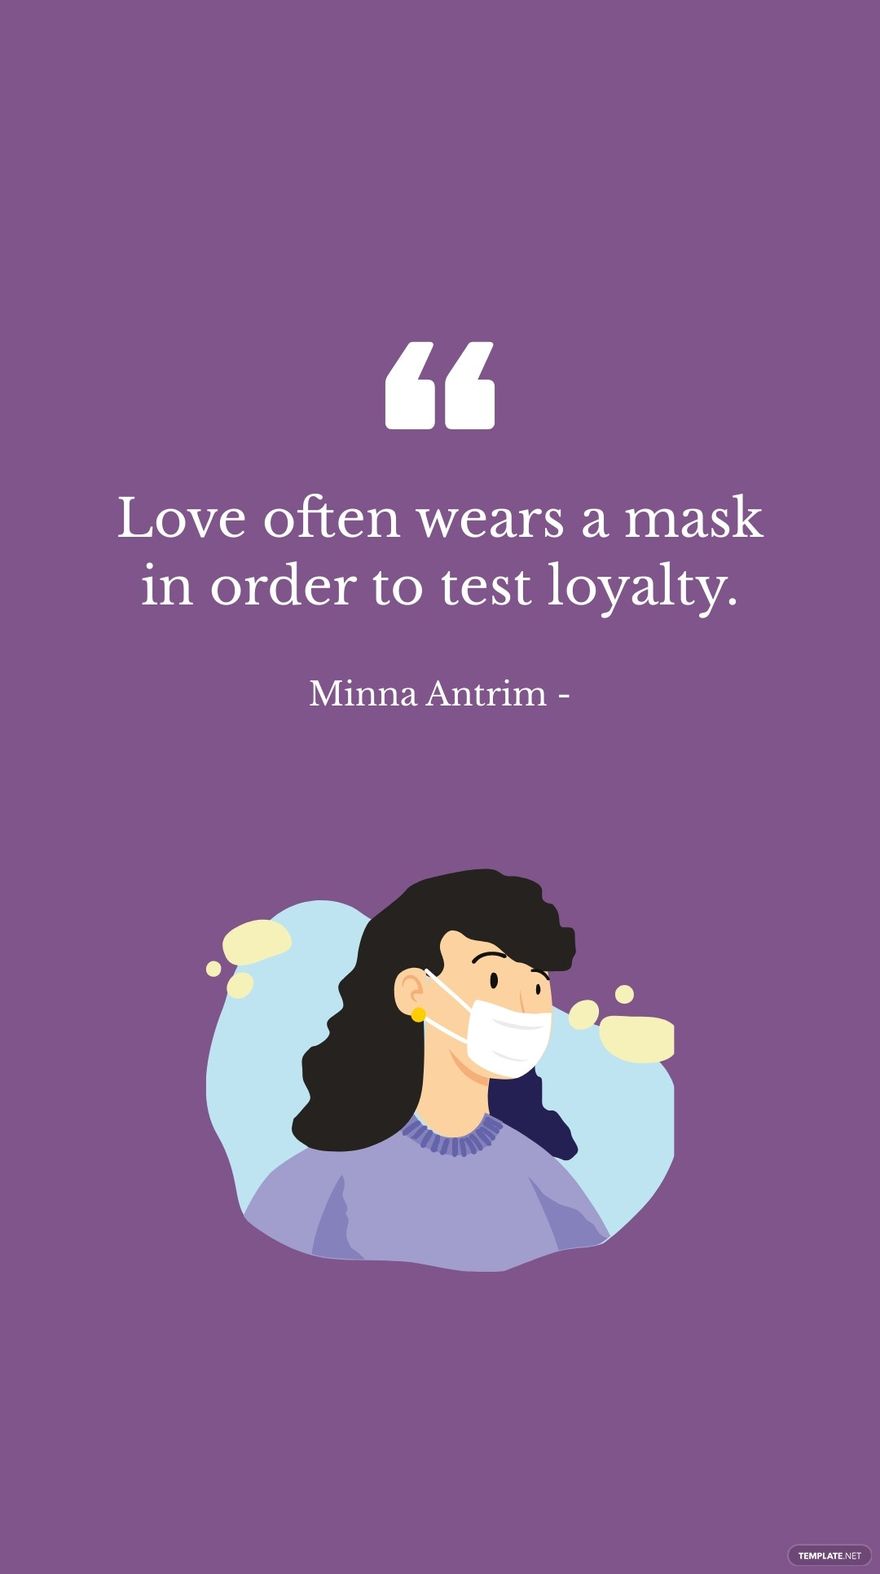 Minna Antrim - Love often wears a mask in order to test loyalty. in JPG